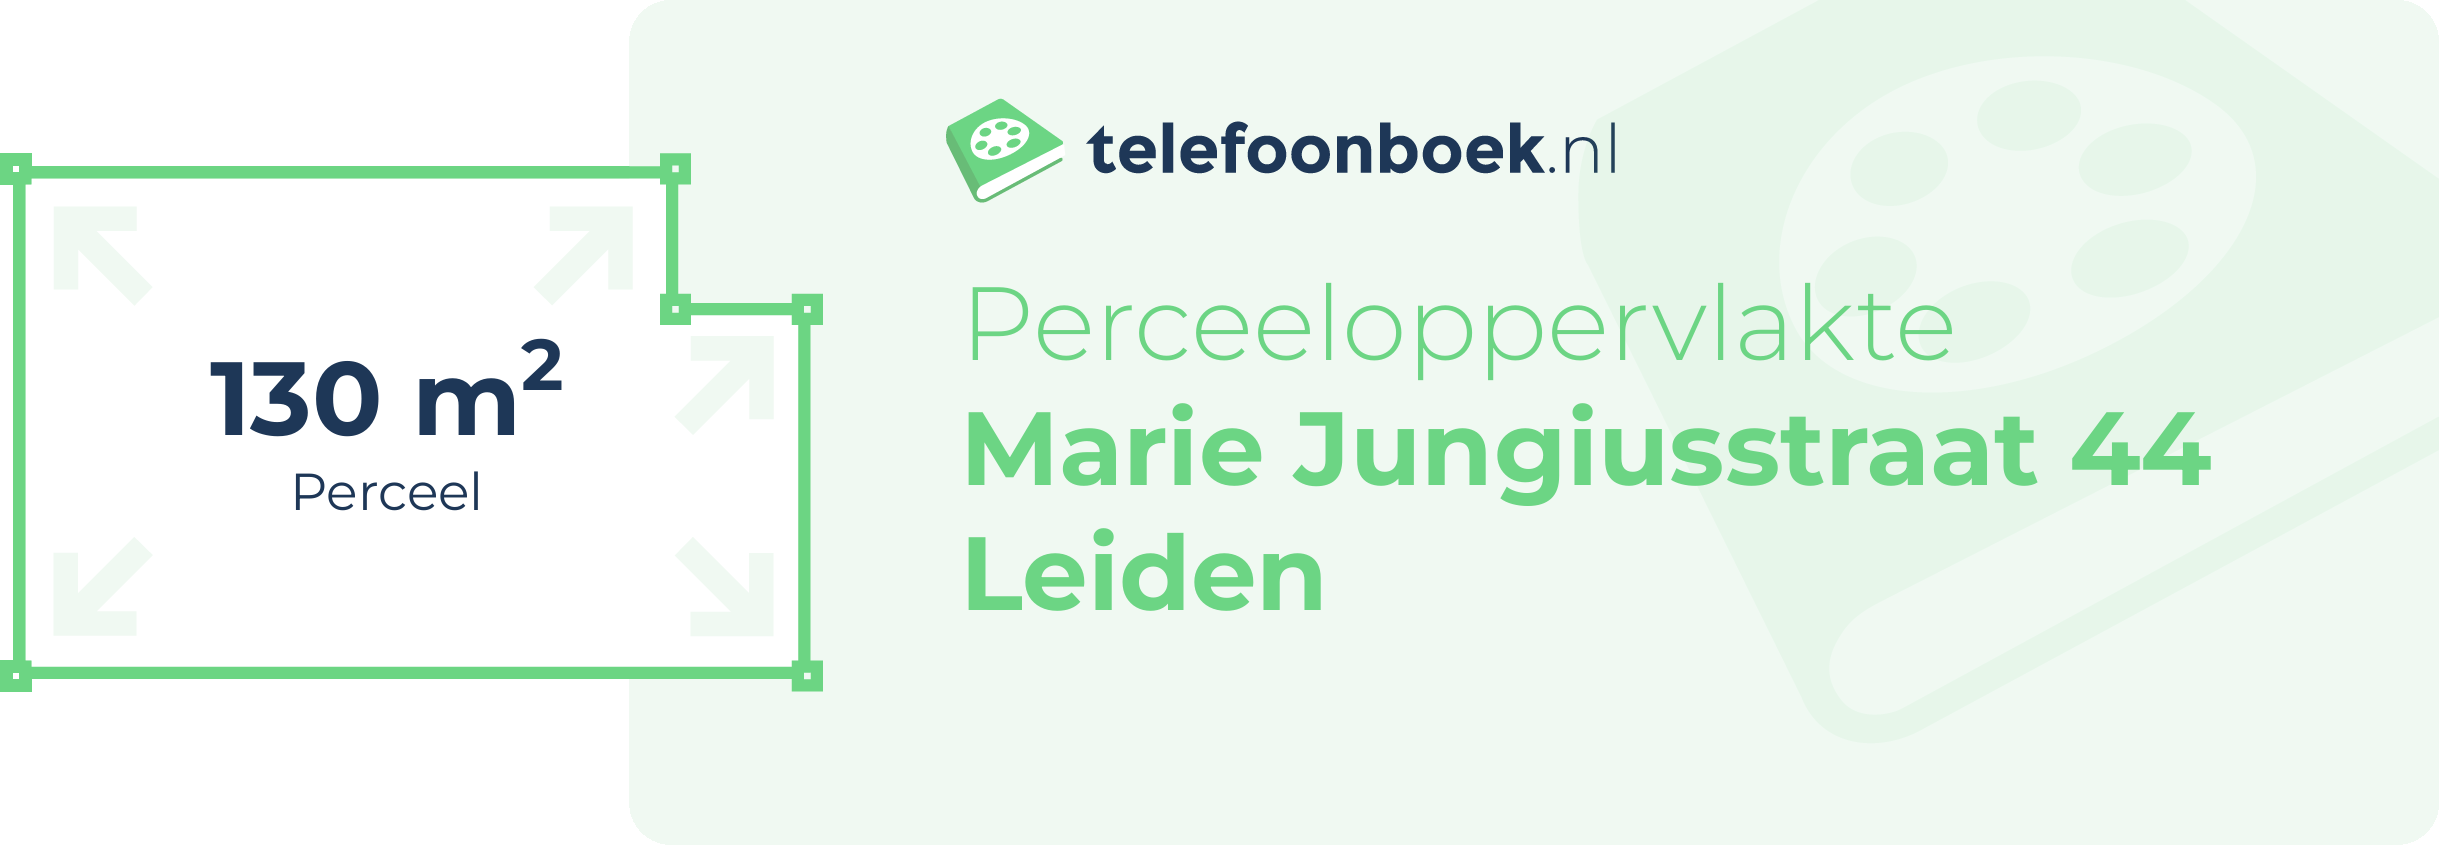 Perceeloppervlakte Marie Jungiusstraat 44 Leiden